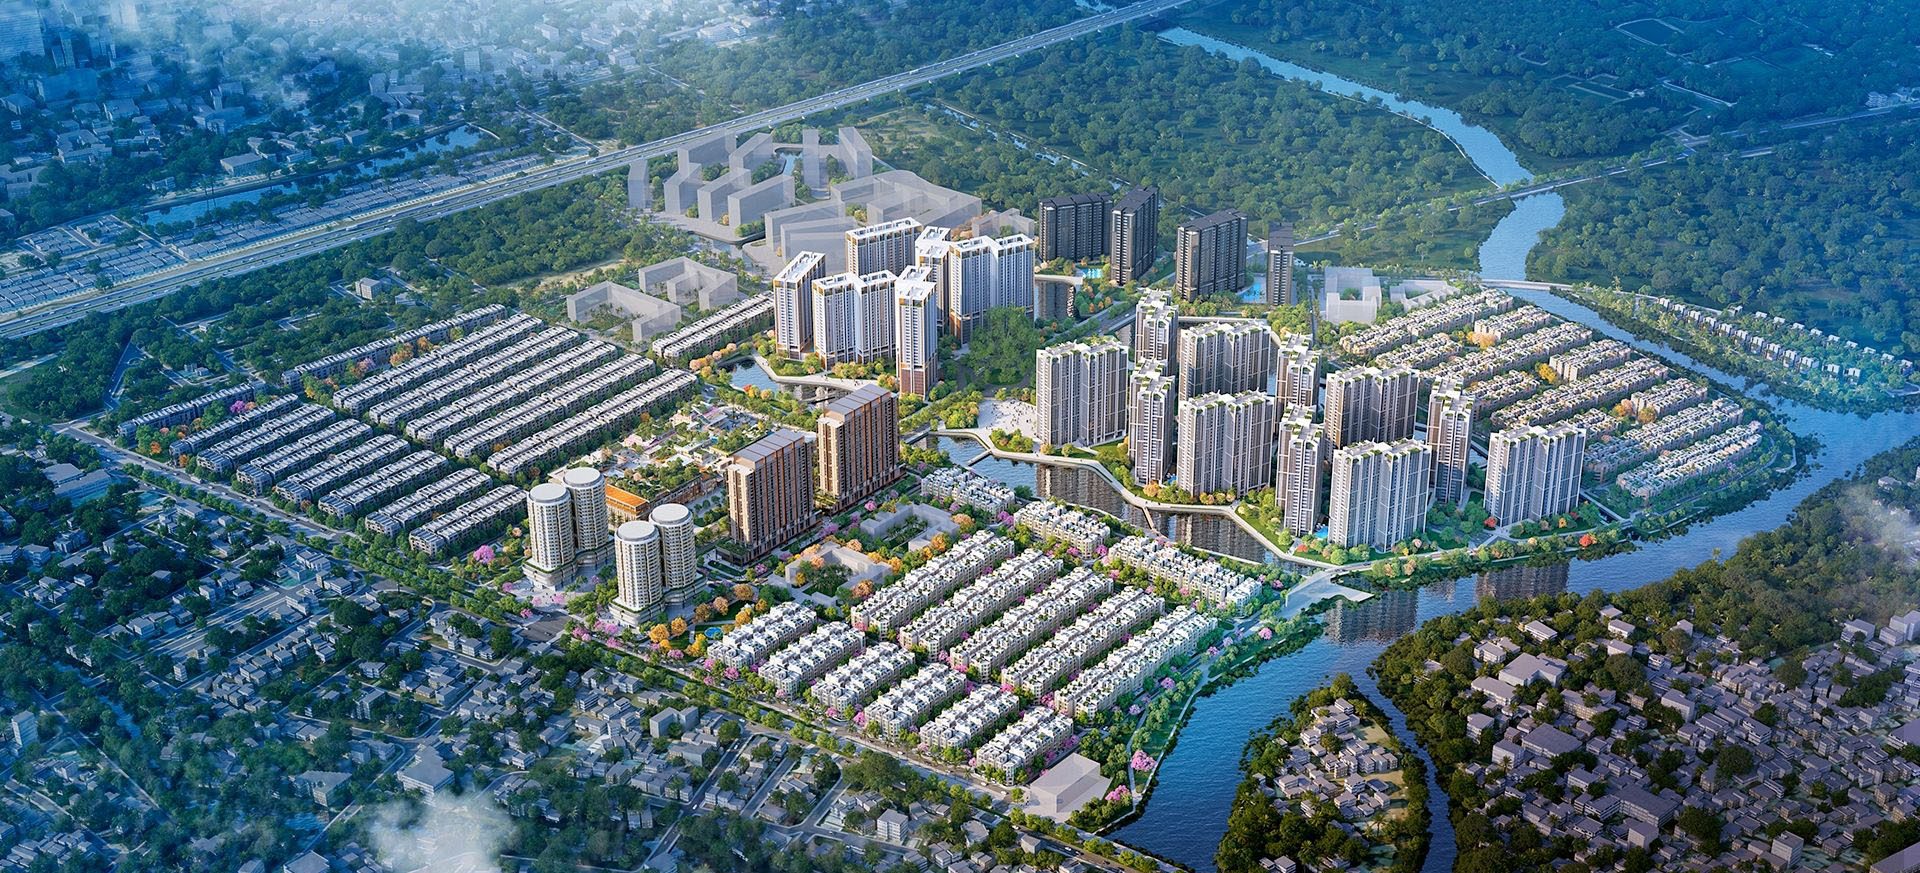 The Global City – Masterise Homes – Thành phố đẳng cấp quốc tế đầu tiên của Sài Gòn